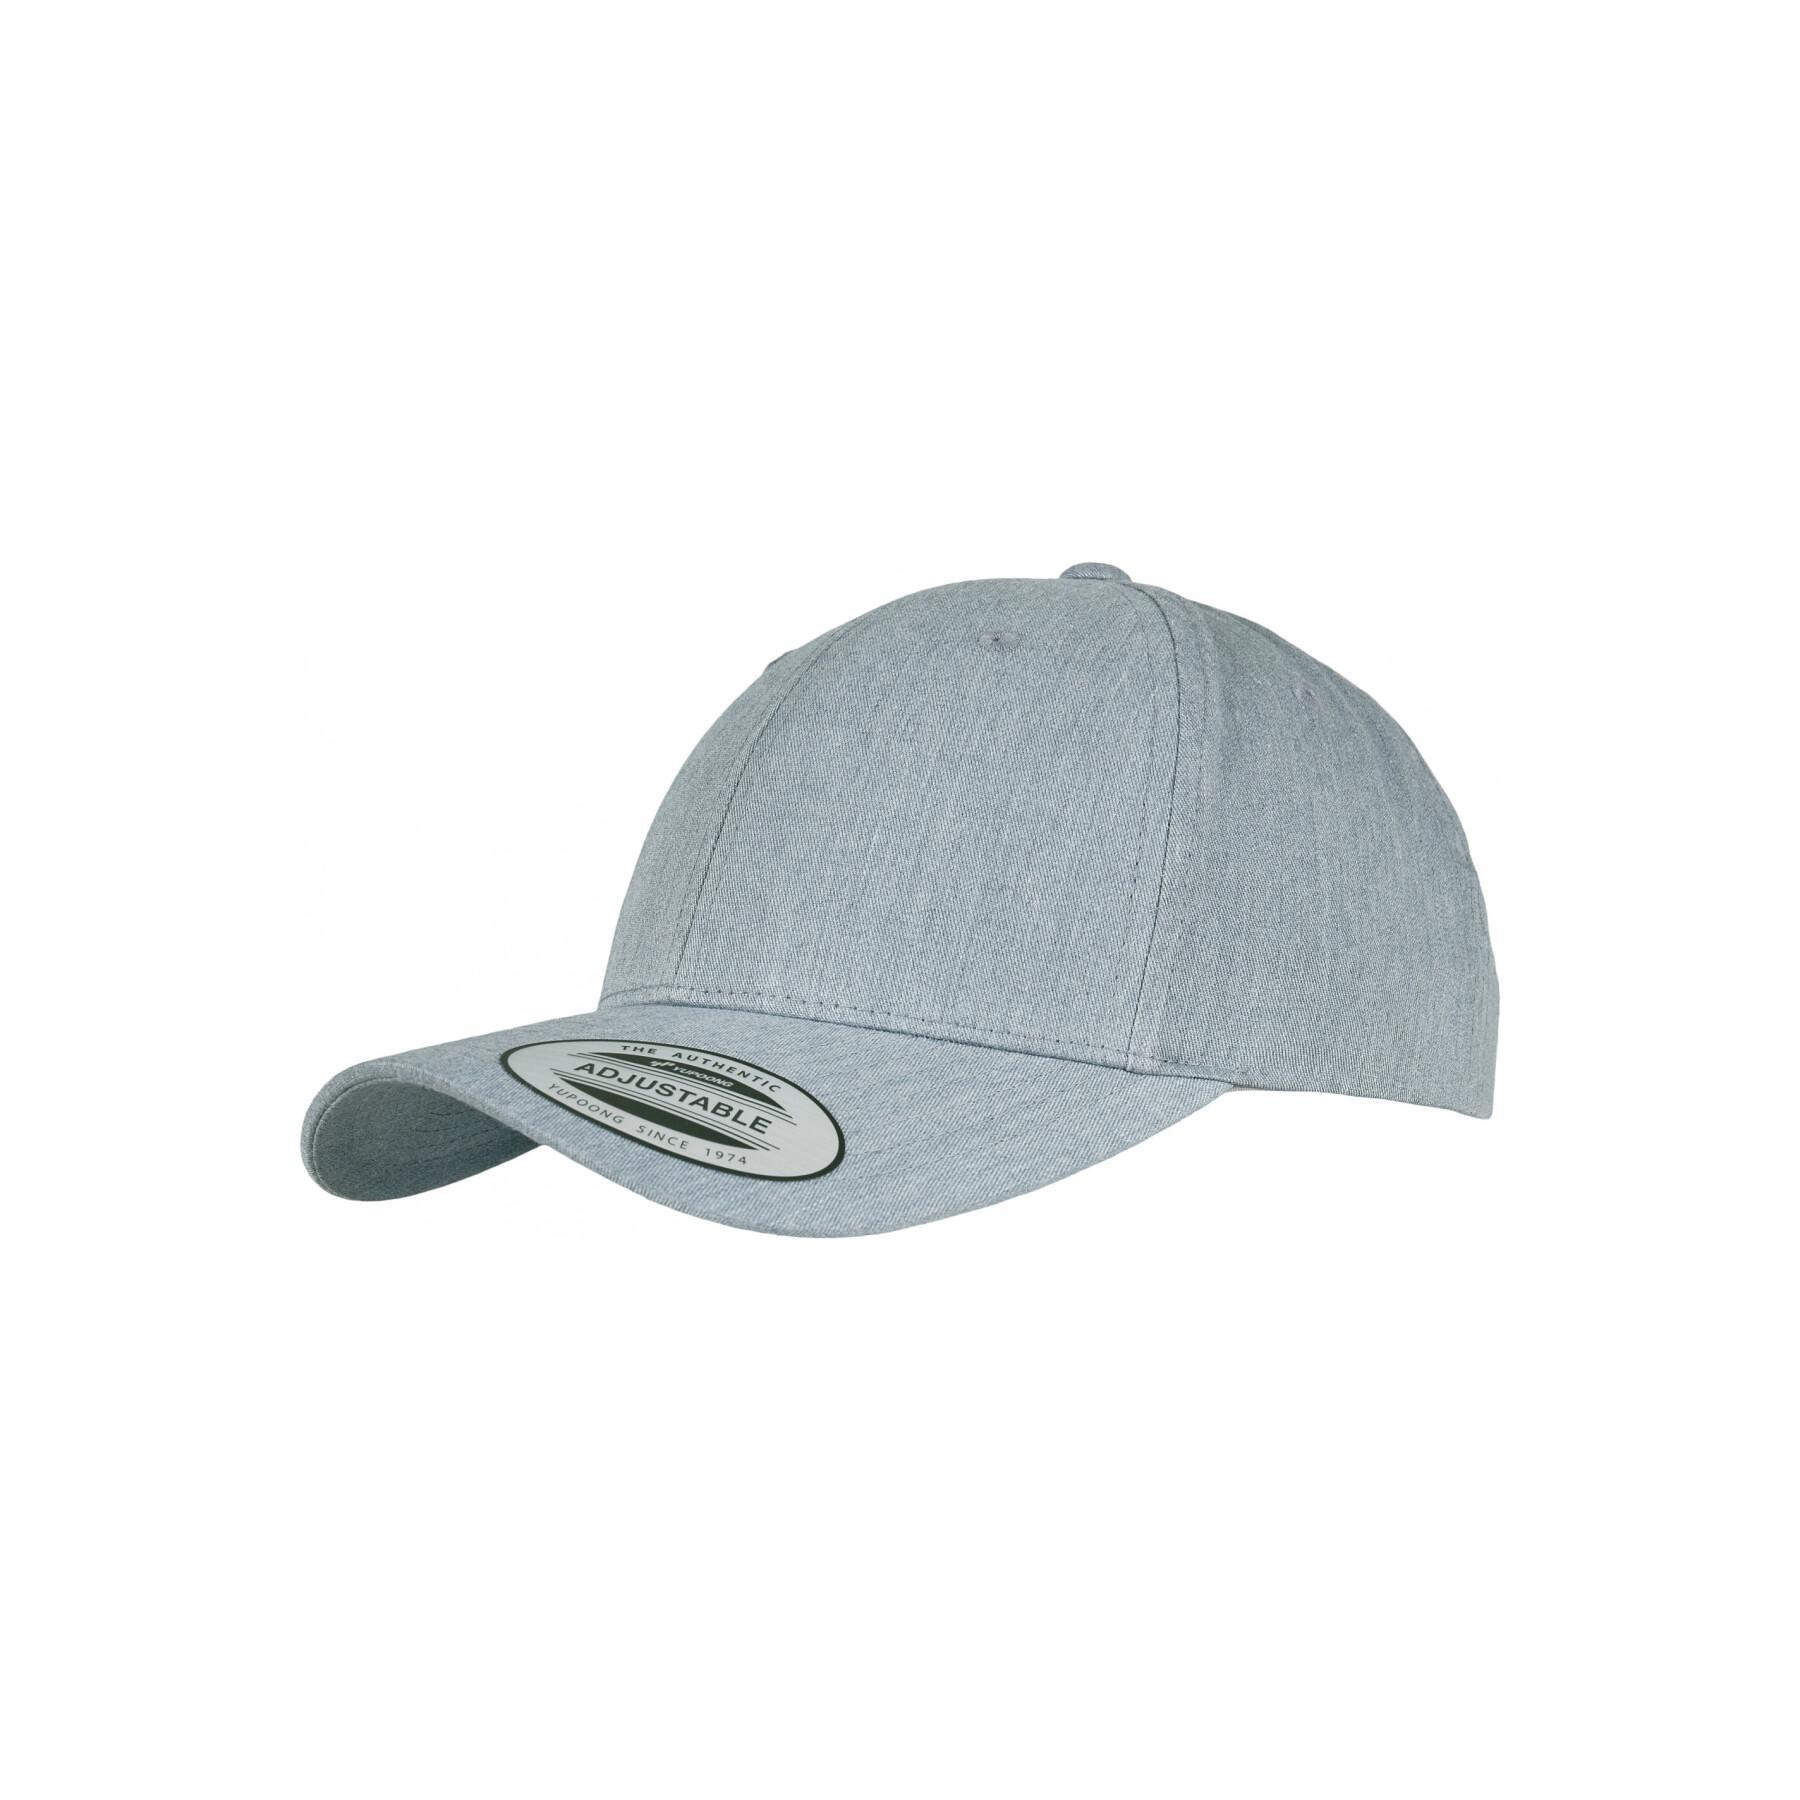 Accessories Headwear Classic cap Baseball curved - - caps - Flexfit